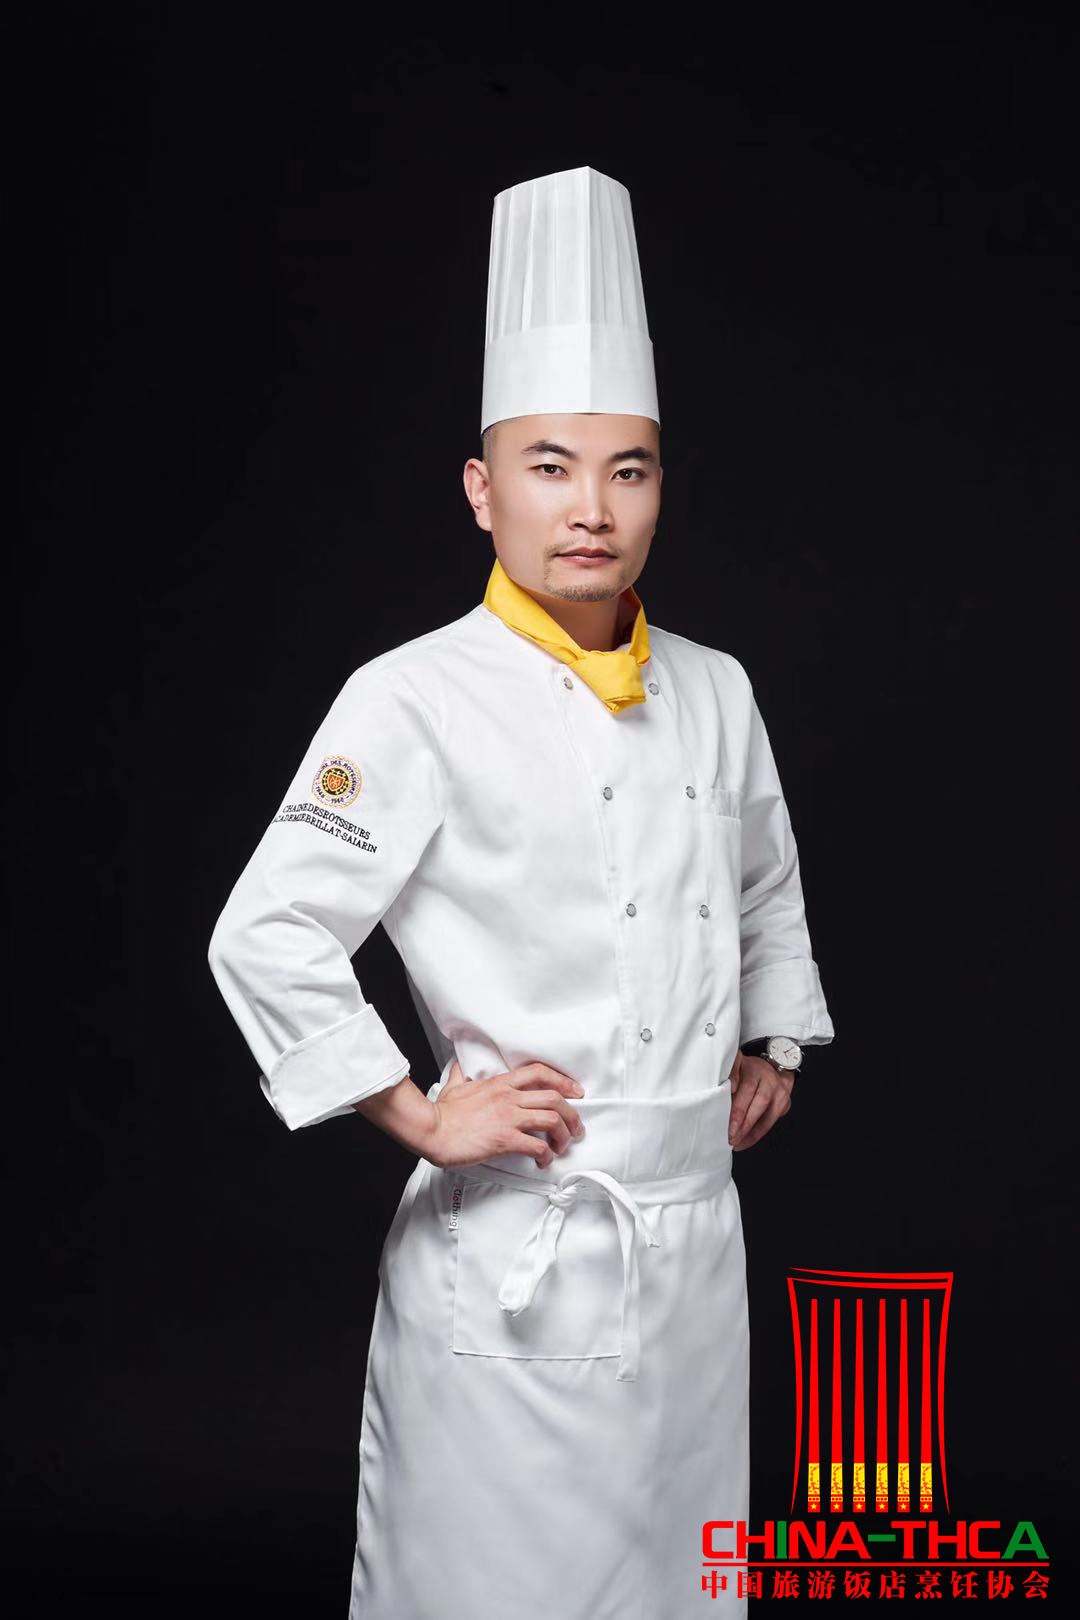 高级厨师经典与寓意流露菜品 中国烹饪大师张鹏鹏把创意菜融入中国